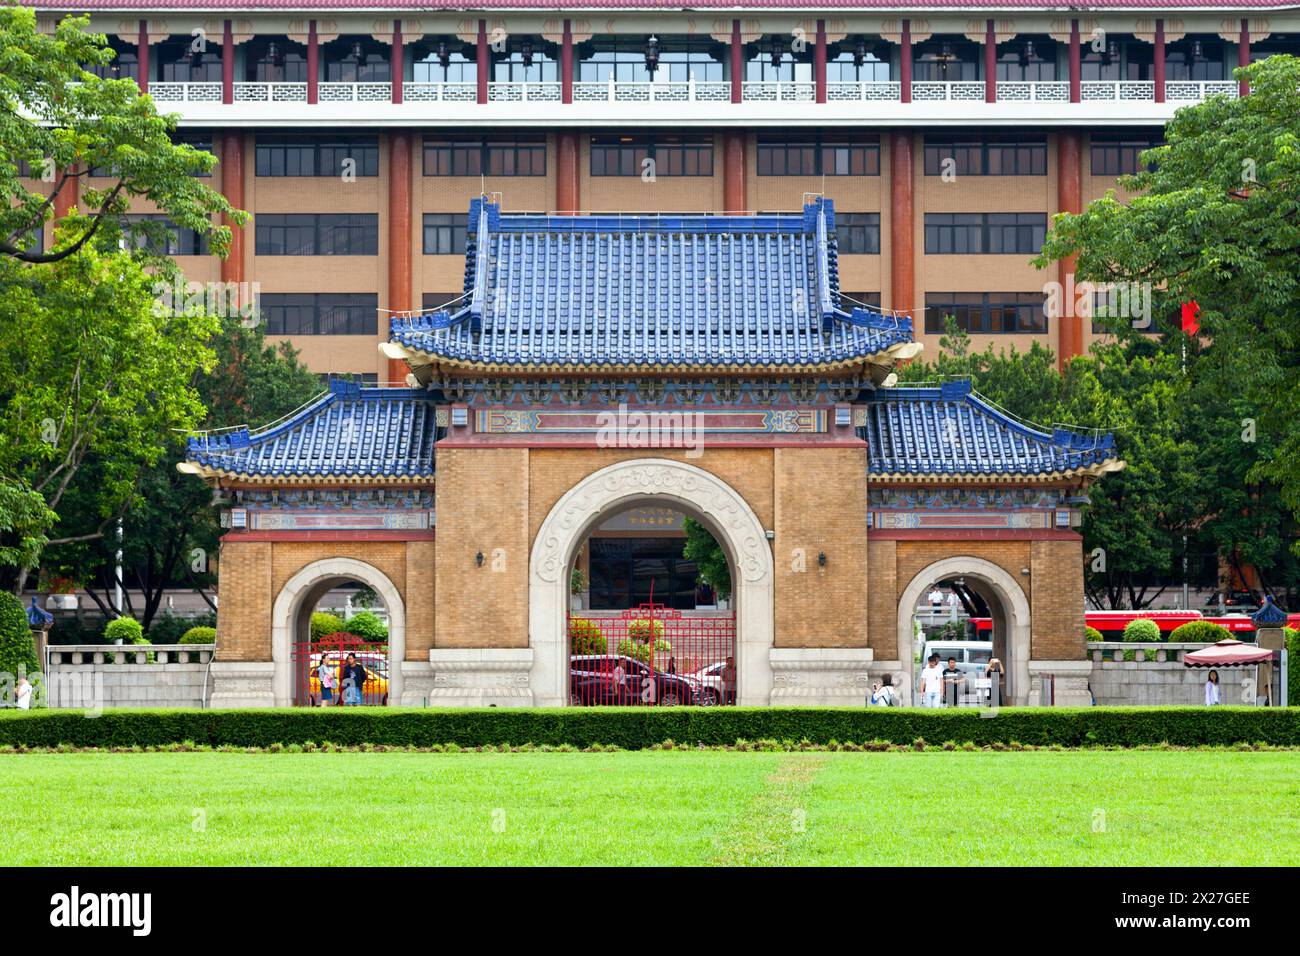 Guangzhou, China - August 16 2018: Main entrance of the Sun Yat-sen or Zhongshan Memorial Hall, an octagon-shaped building in Guangzhou, capital of Ch Stock Photo